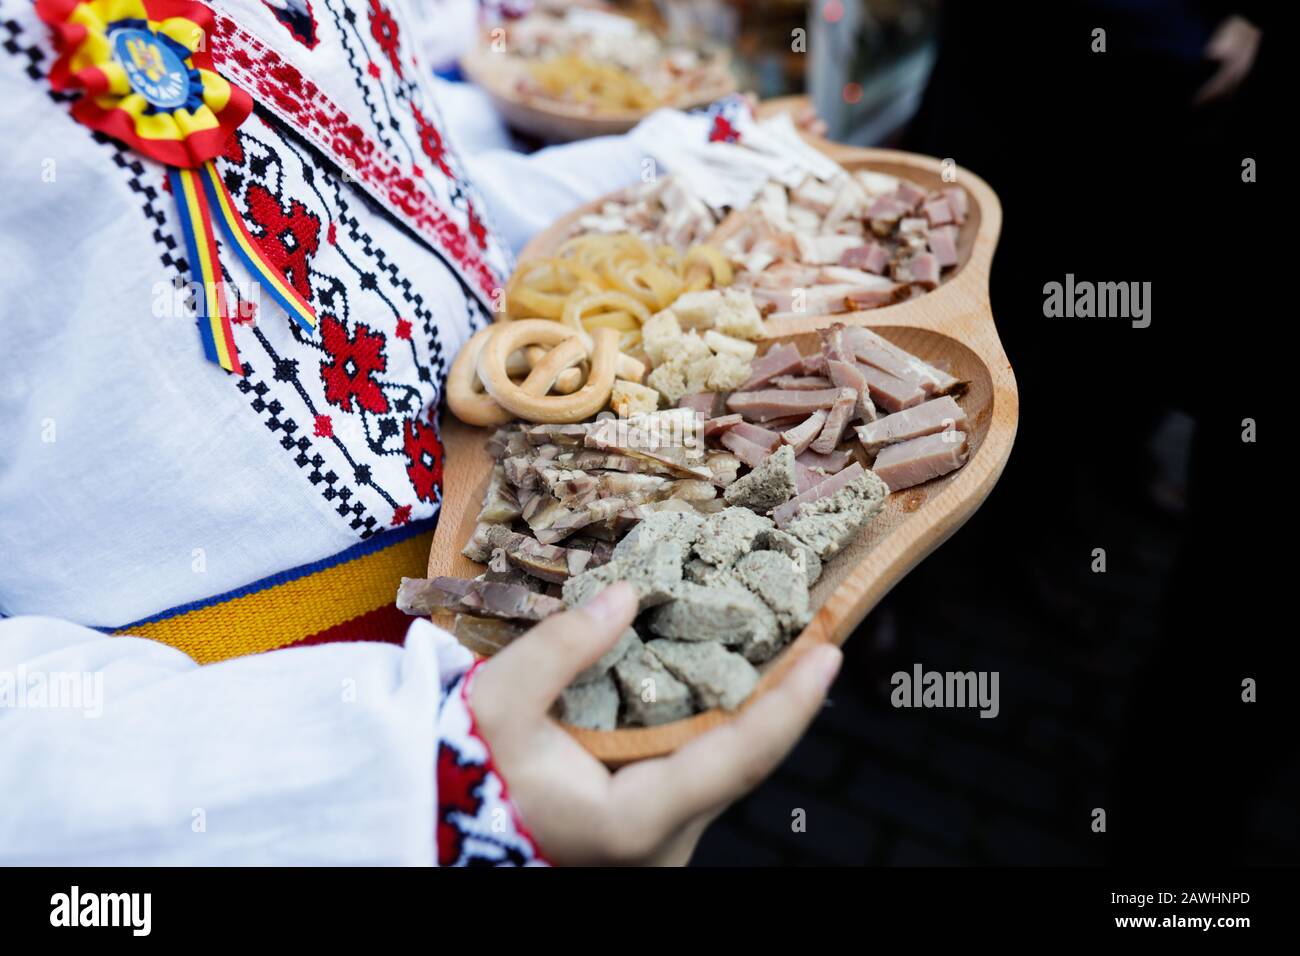 Profondità di campo poco profonda (fuoco selettivo) immagine con un ragazzo vestito con abiti tradizionali rumeni che tiene un piatto di legno con vari cibi invernali, mo Foto Stock